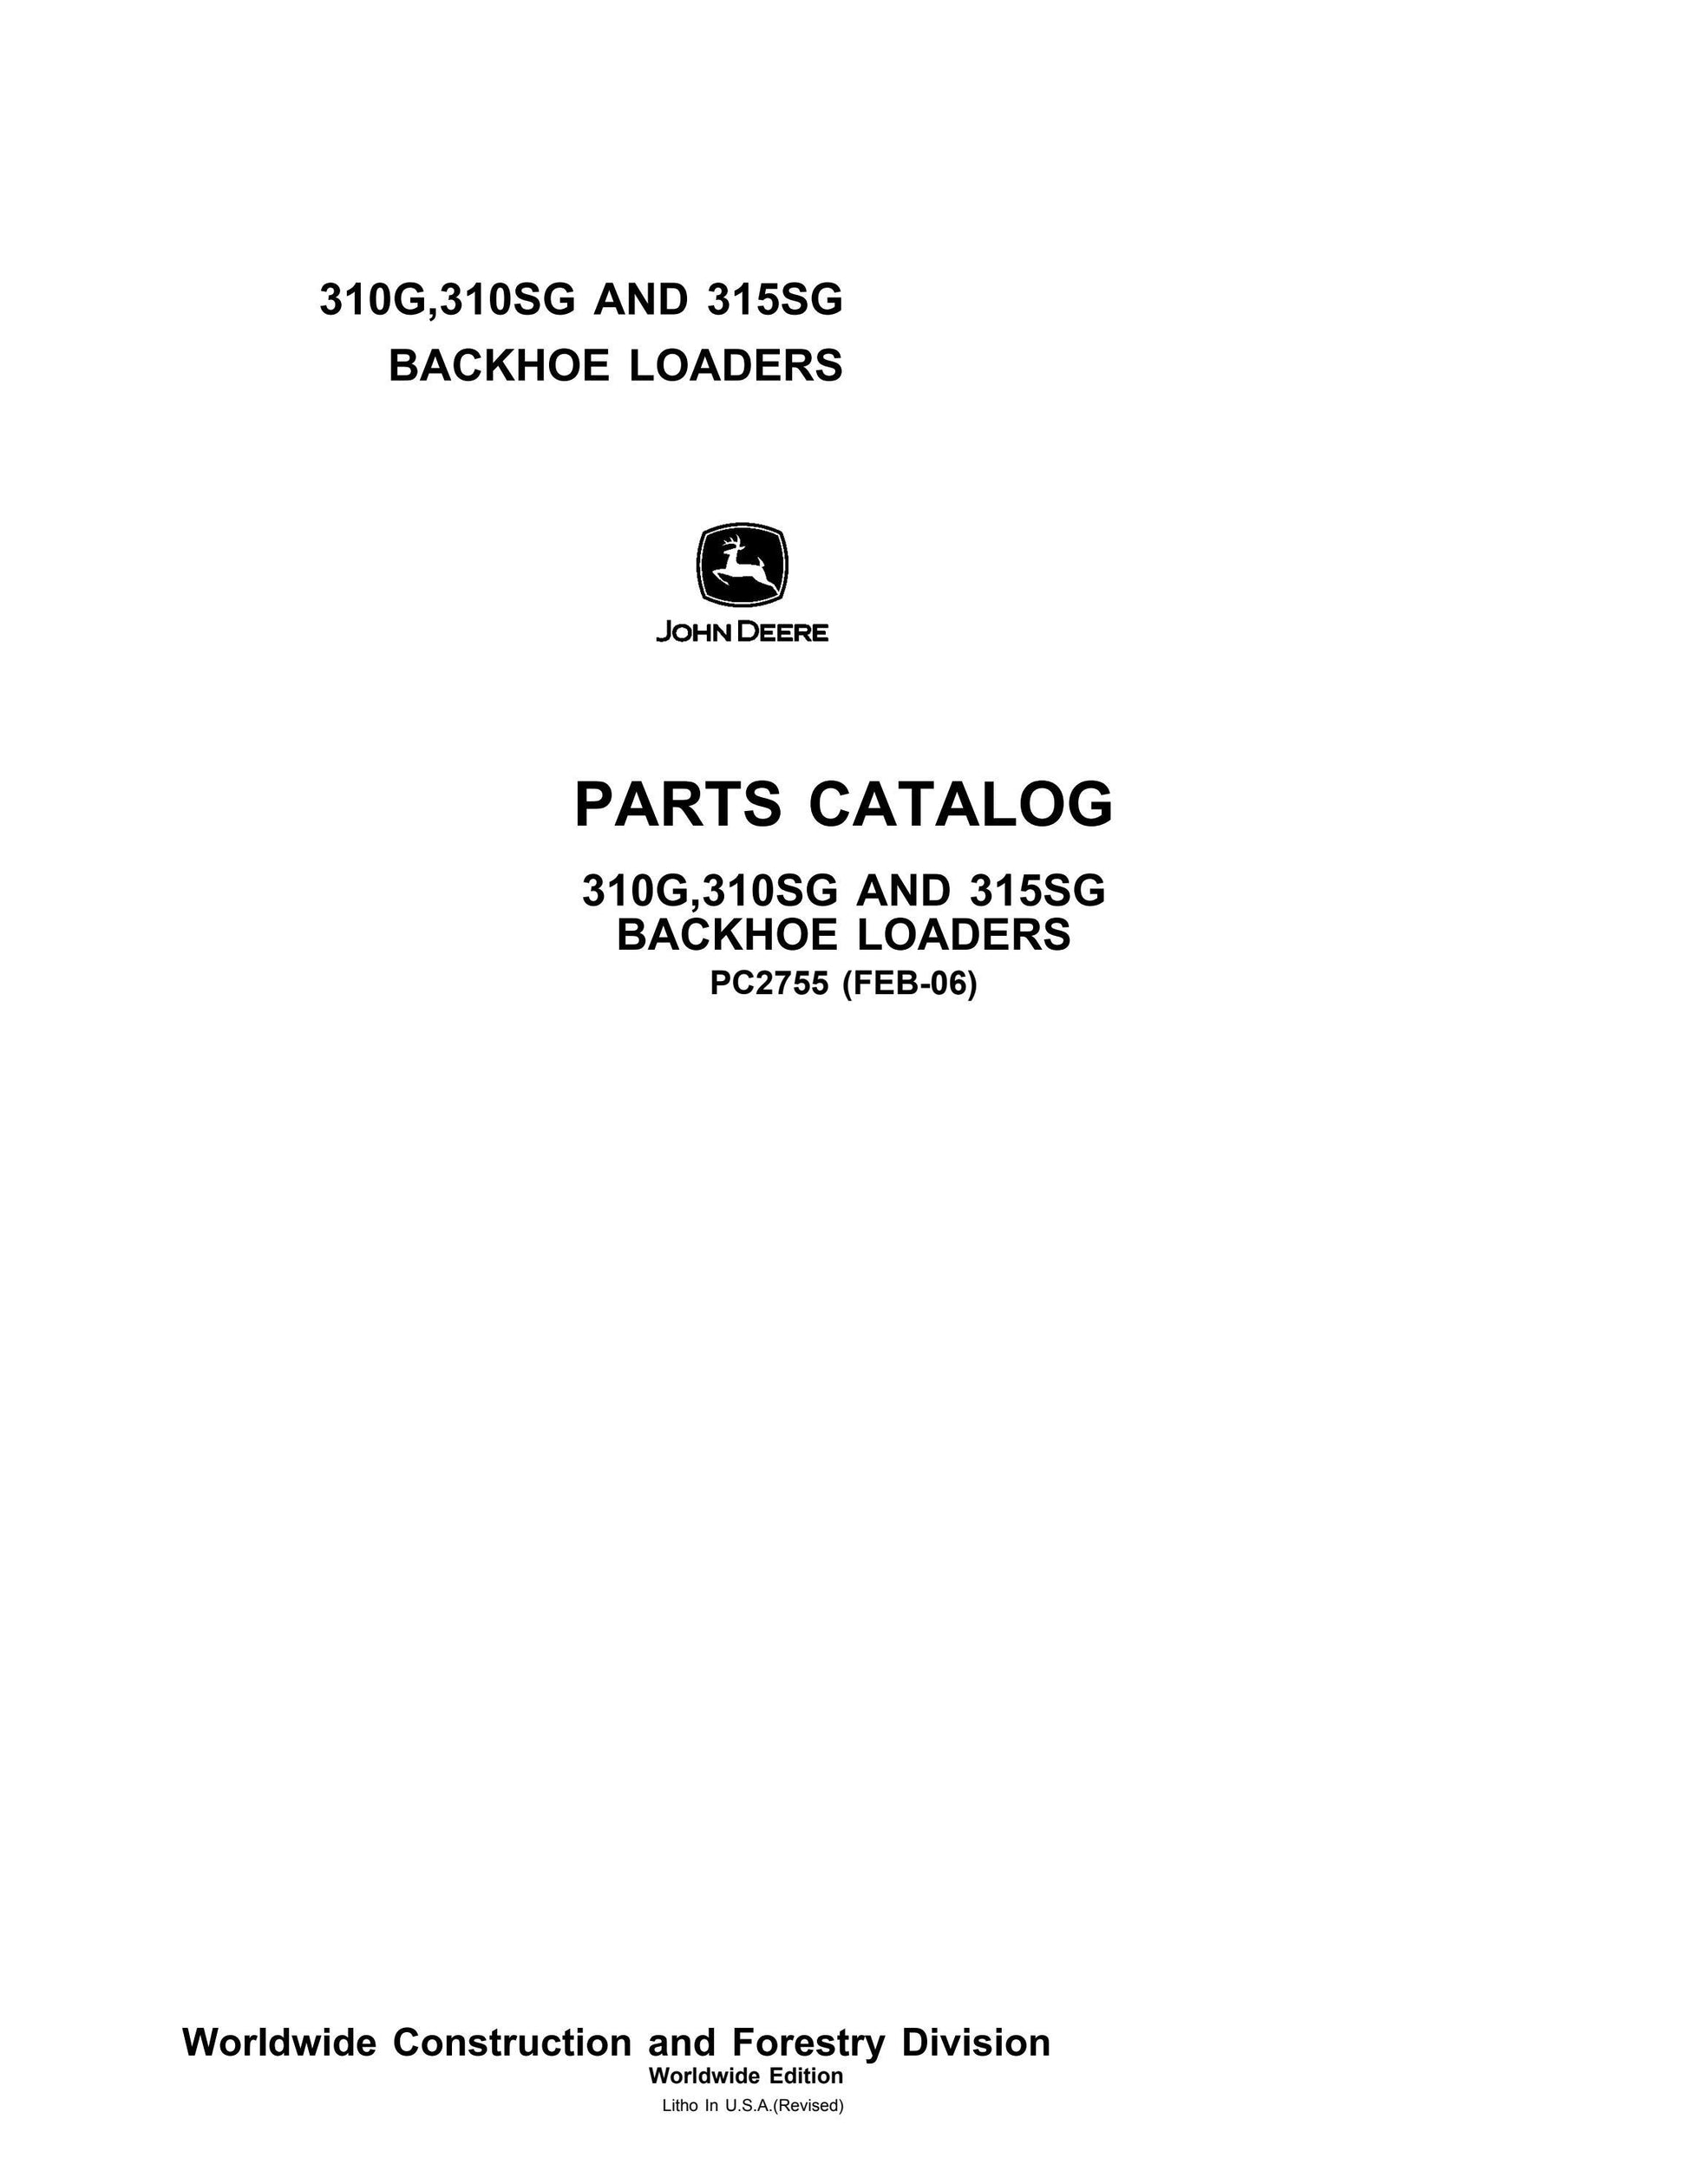 John Deere 310G, 310SG and 315SG Backhoe Loaders Parts Catalog Manual 